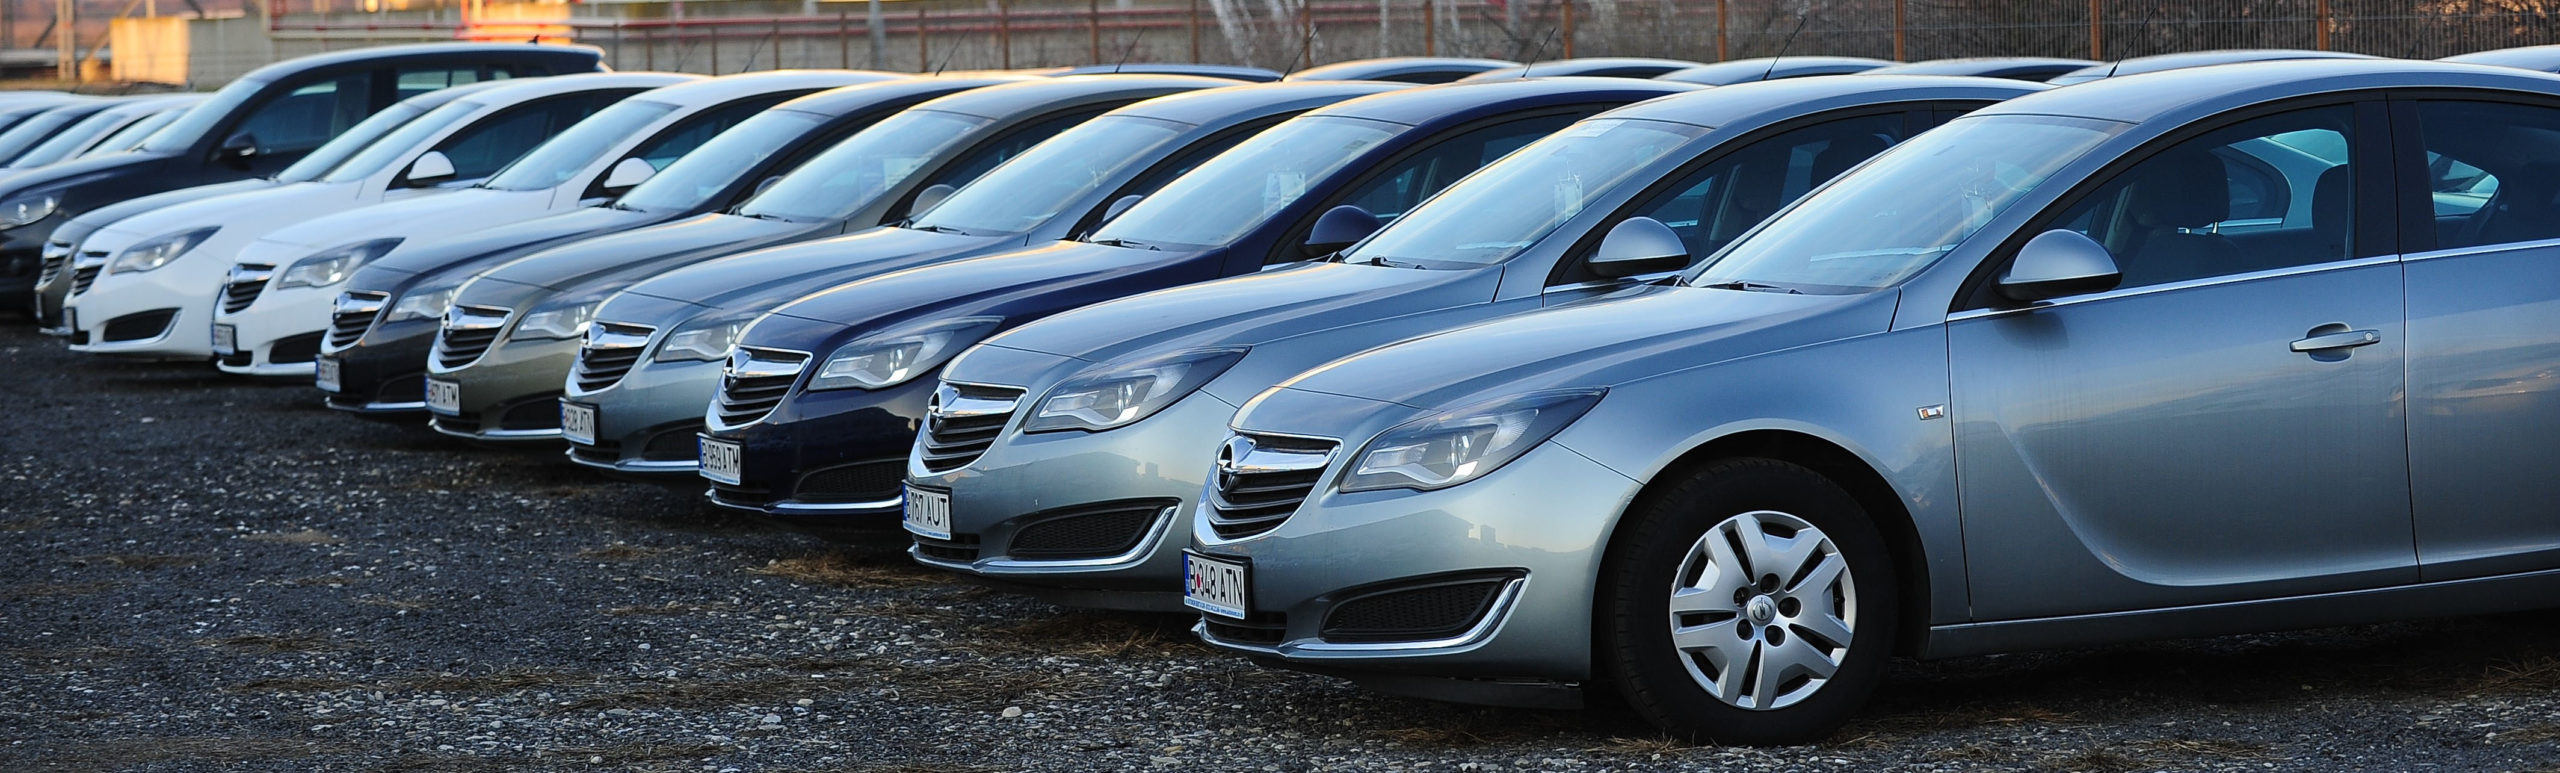 Piața de rent a car din România este într-o continuă creștere